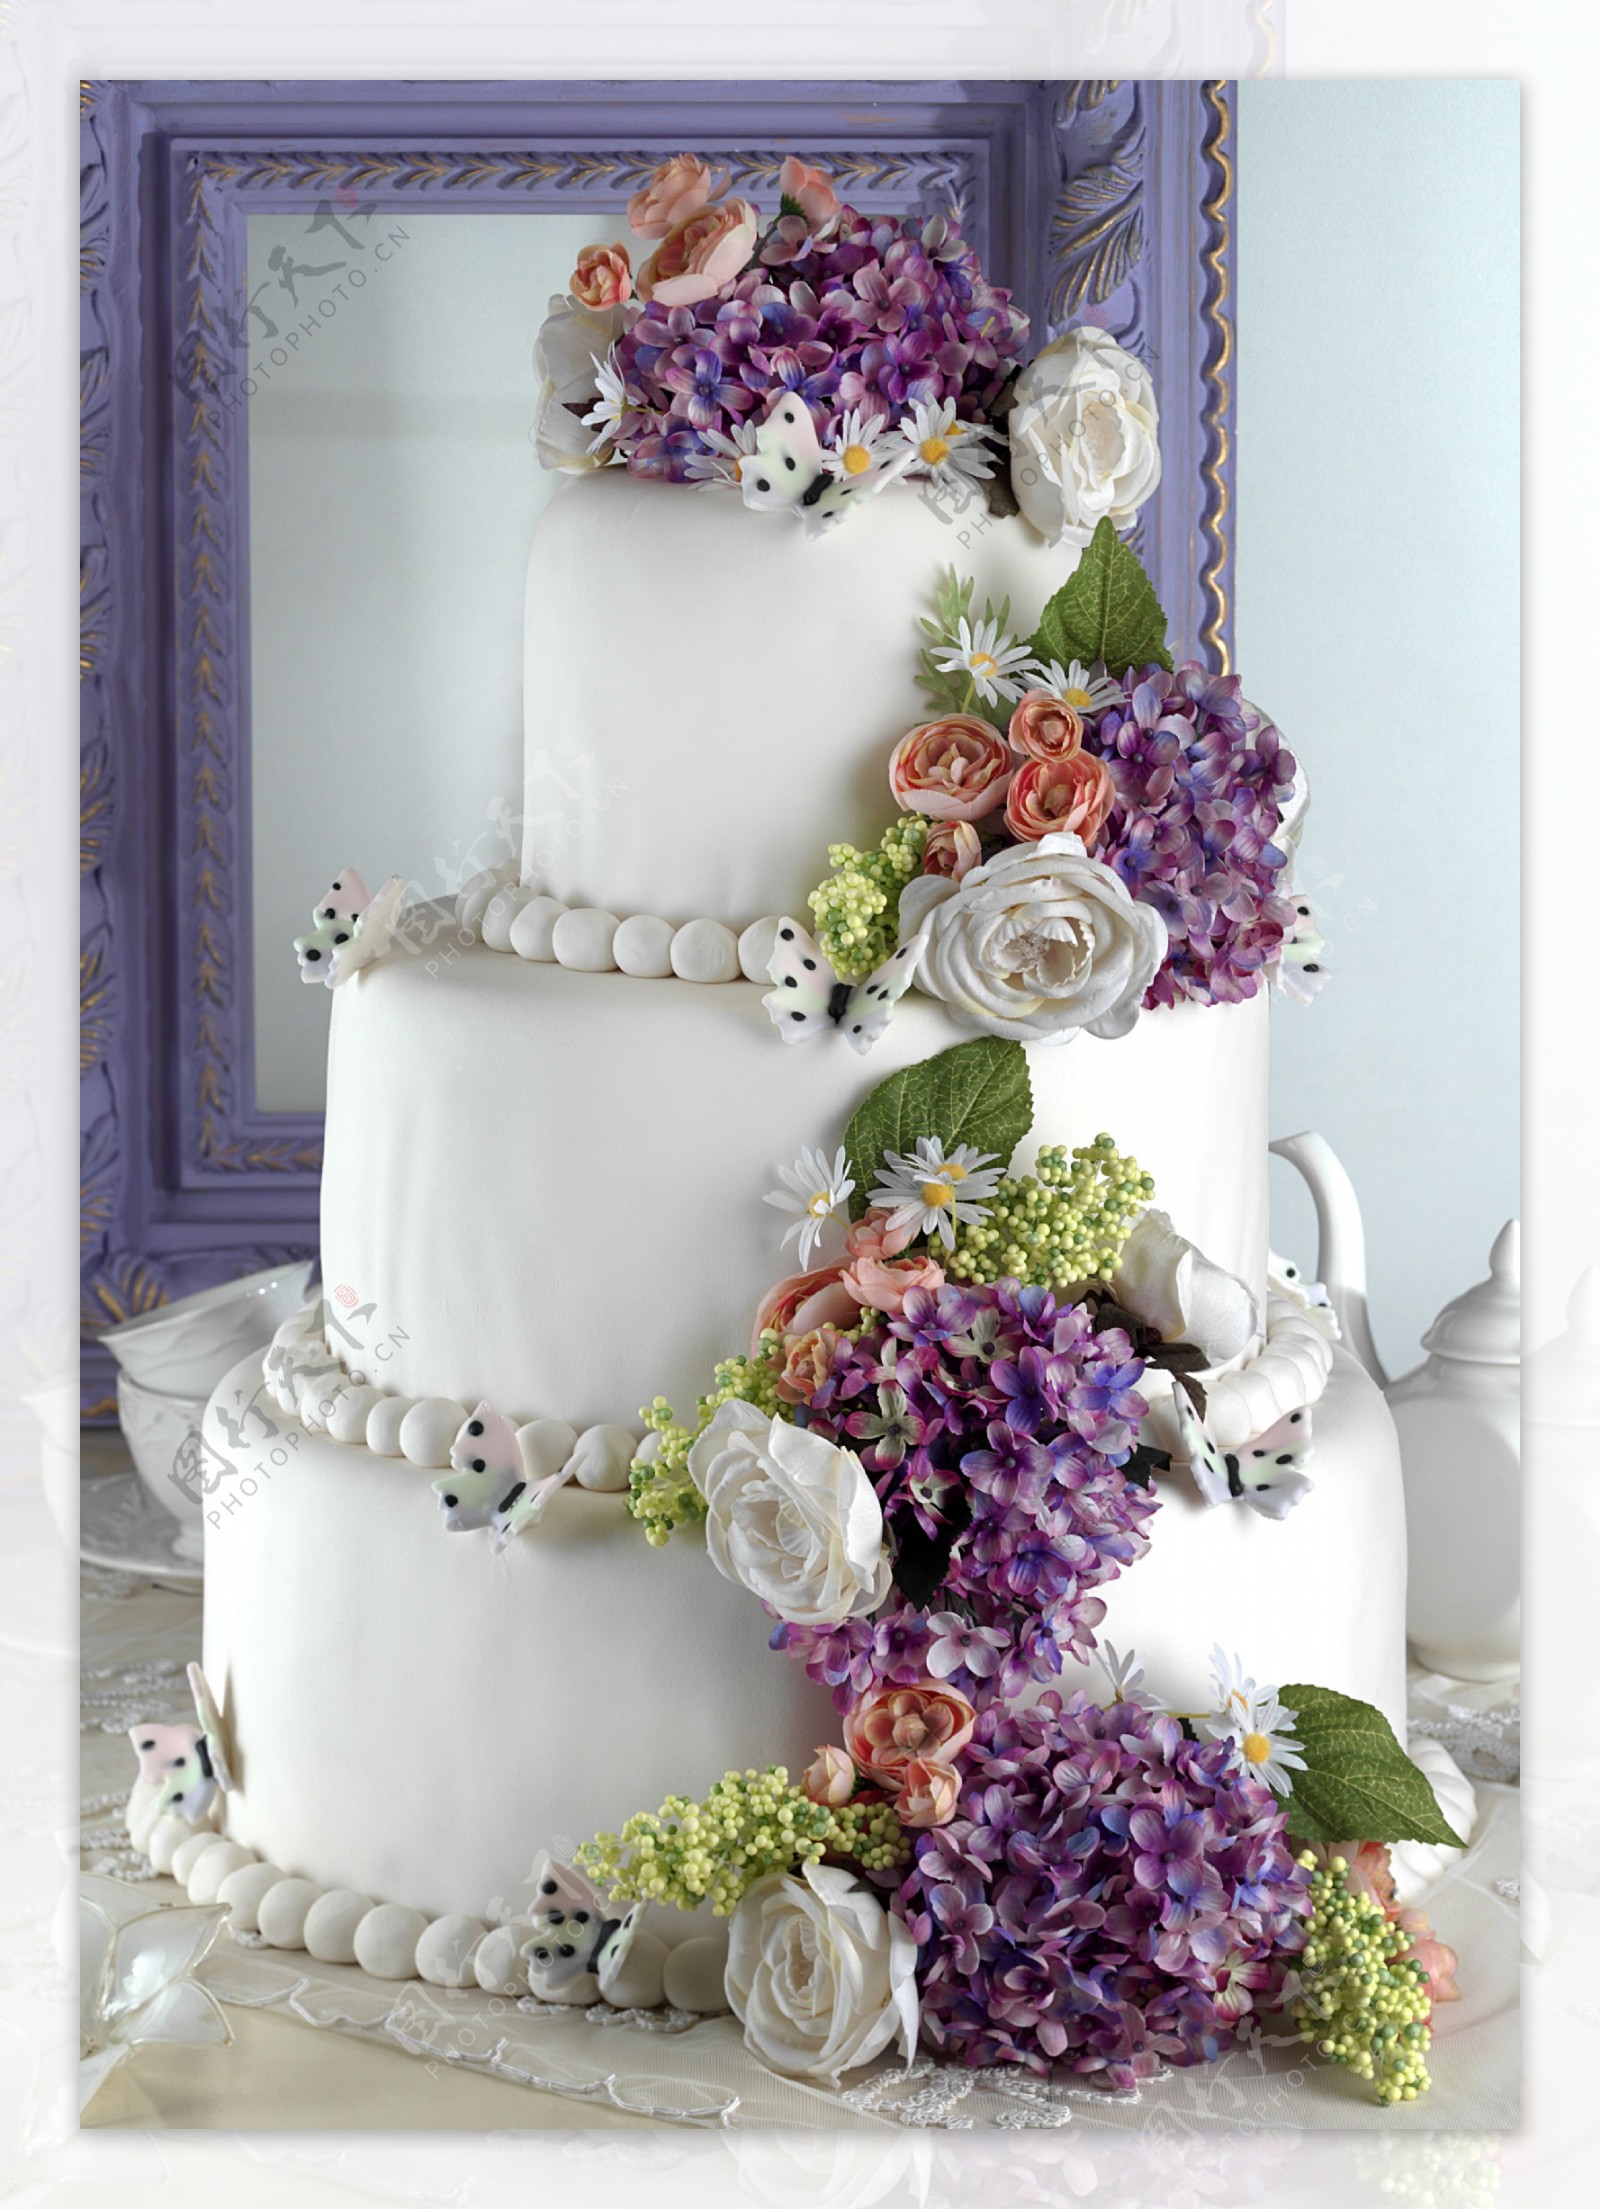 漂亮的结婚蛋糕图片